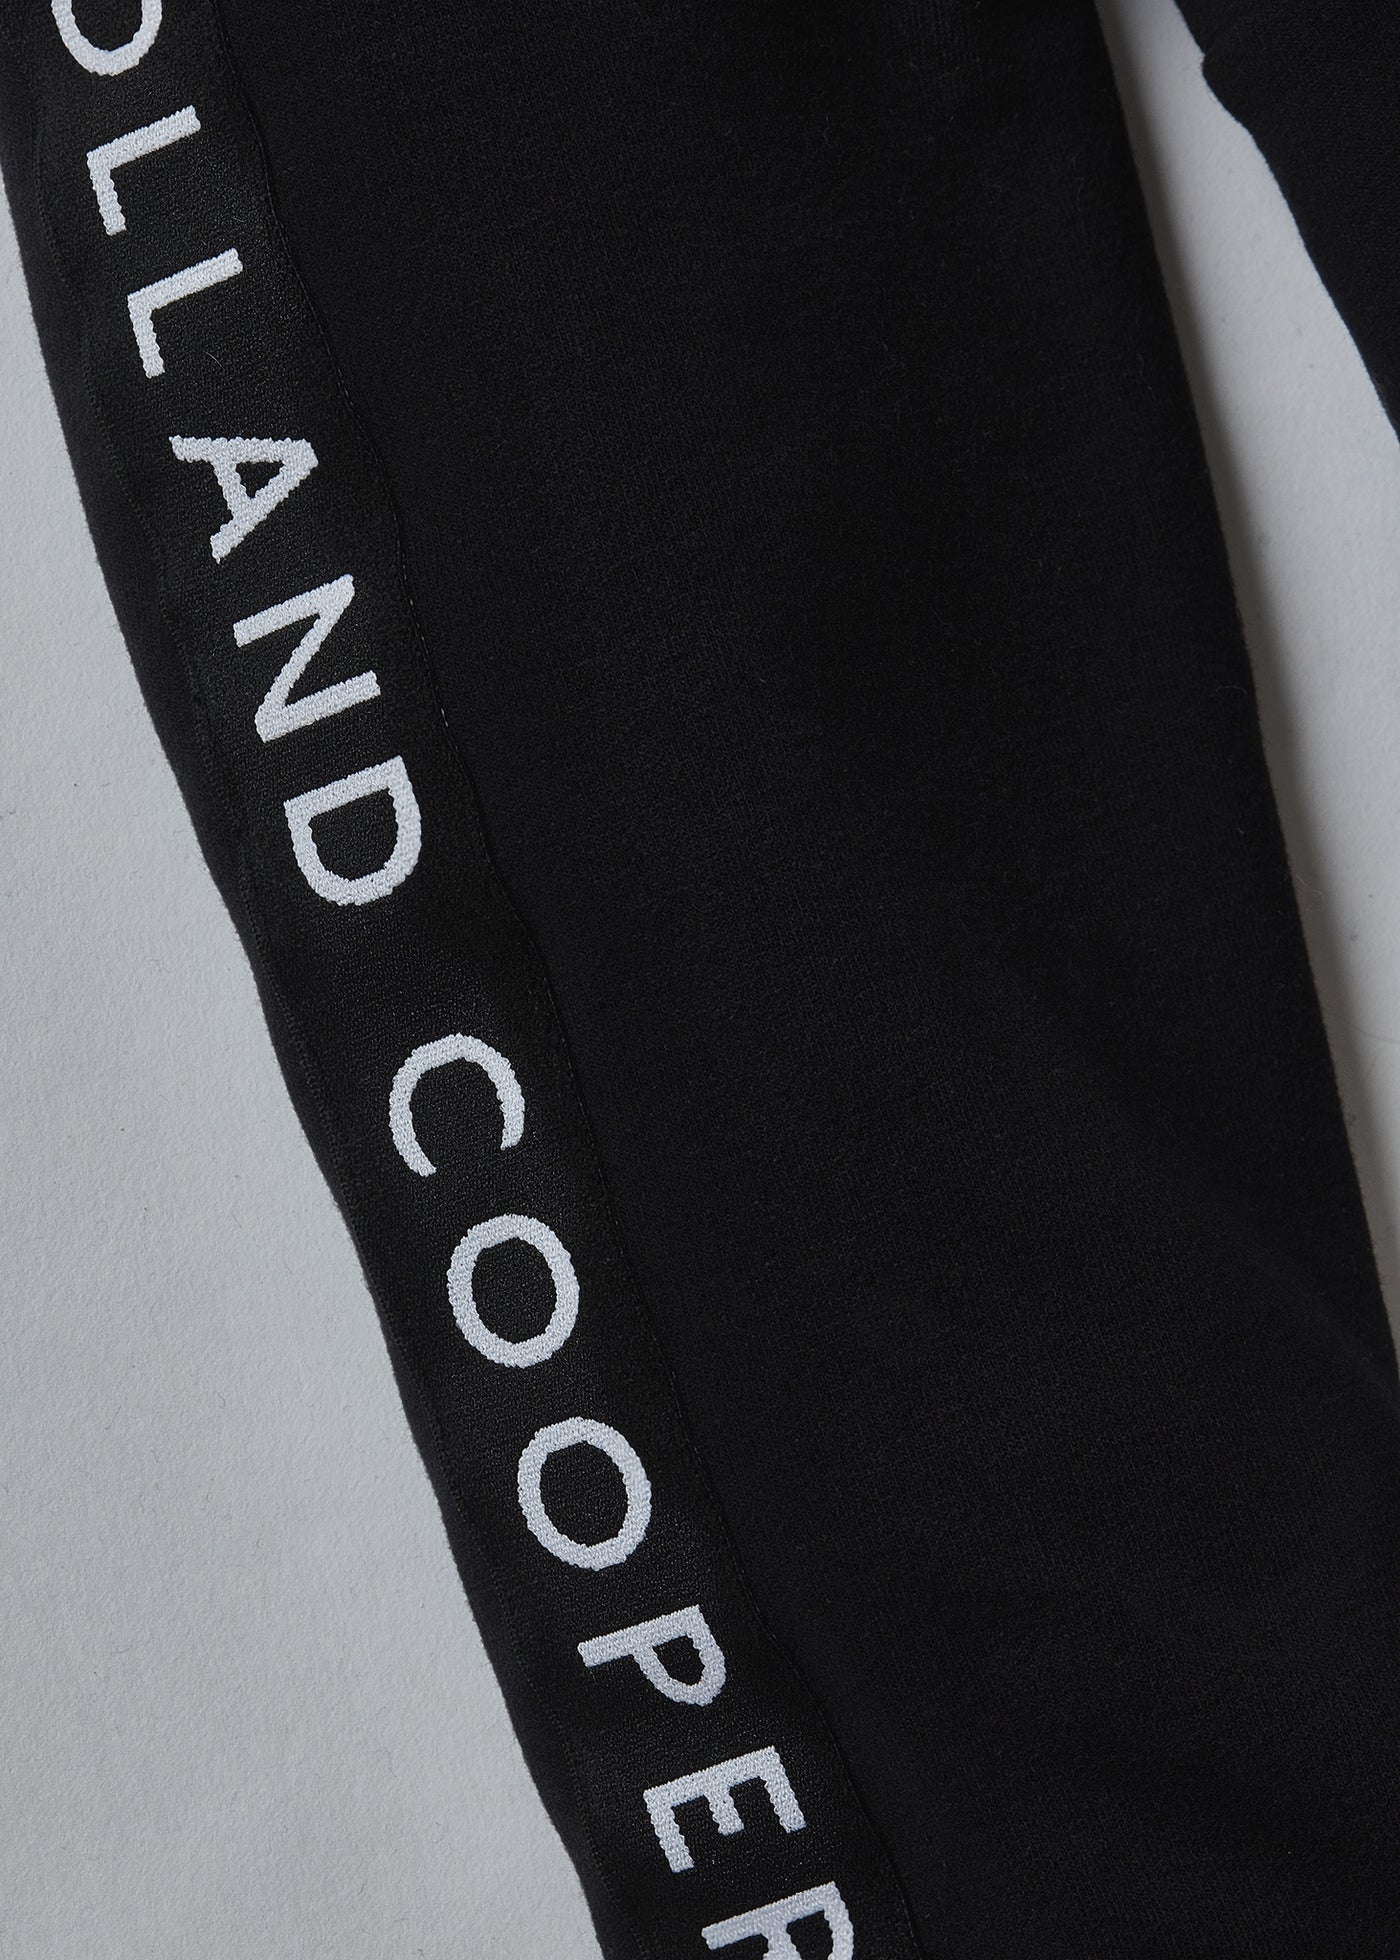 Holland Cooper Deluxe Ladies Hoodie Sweat Top in Black on Black